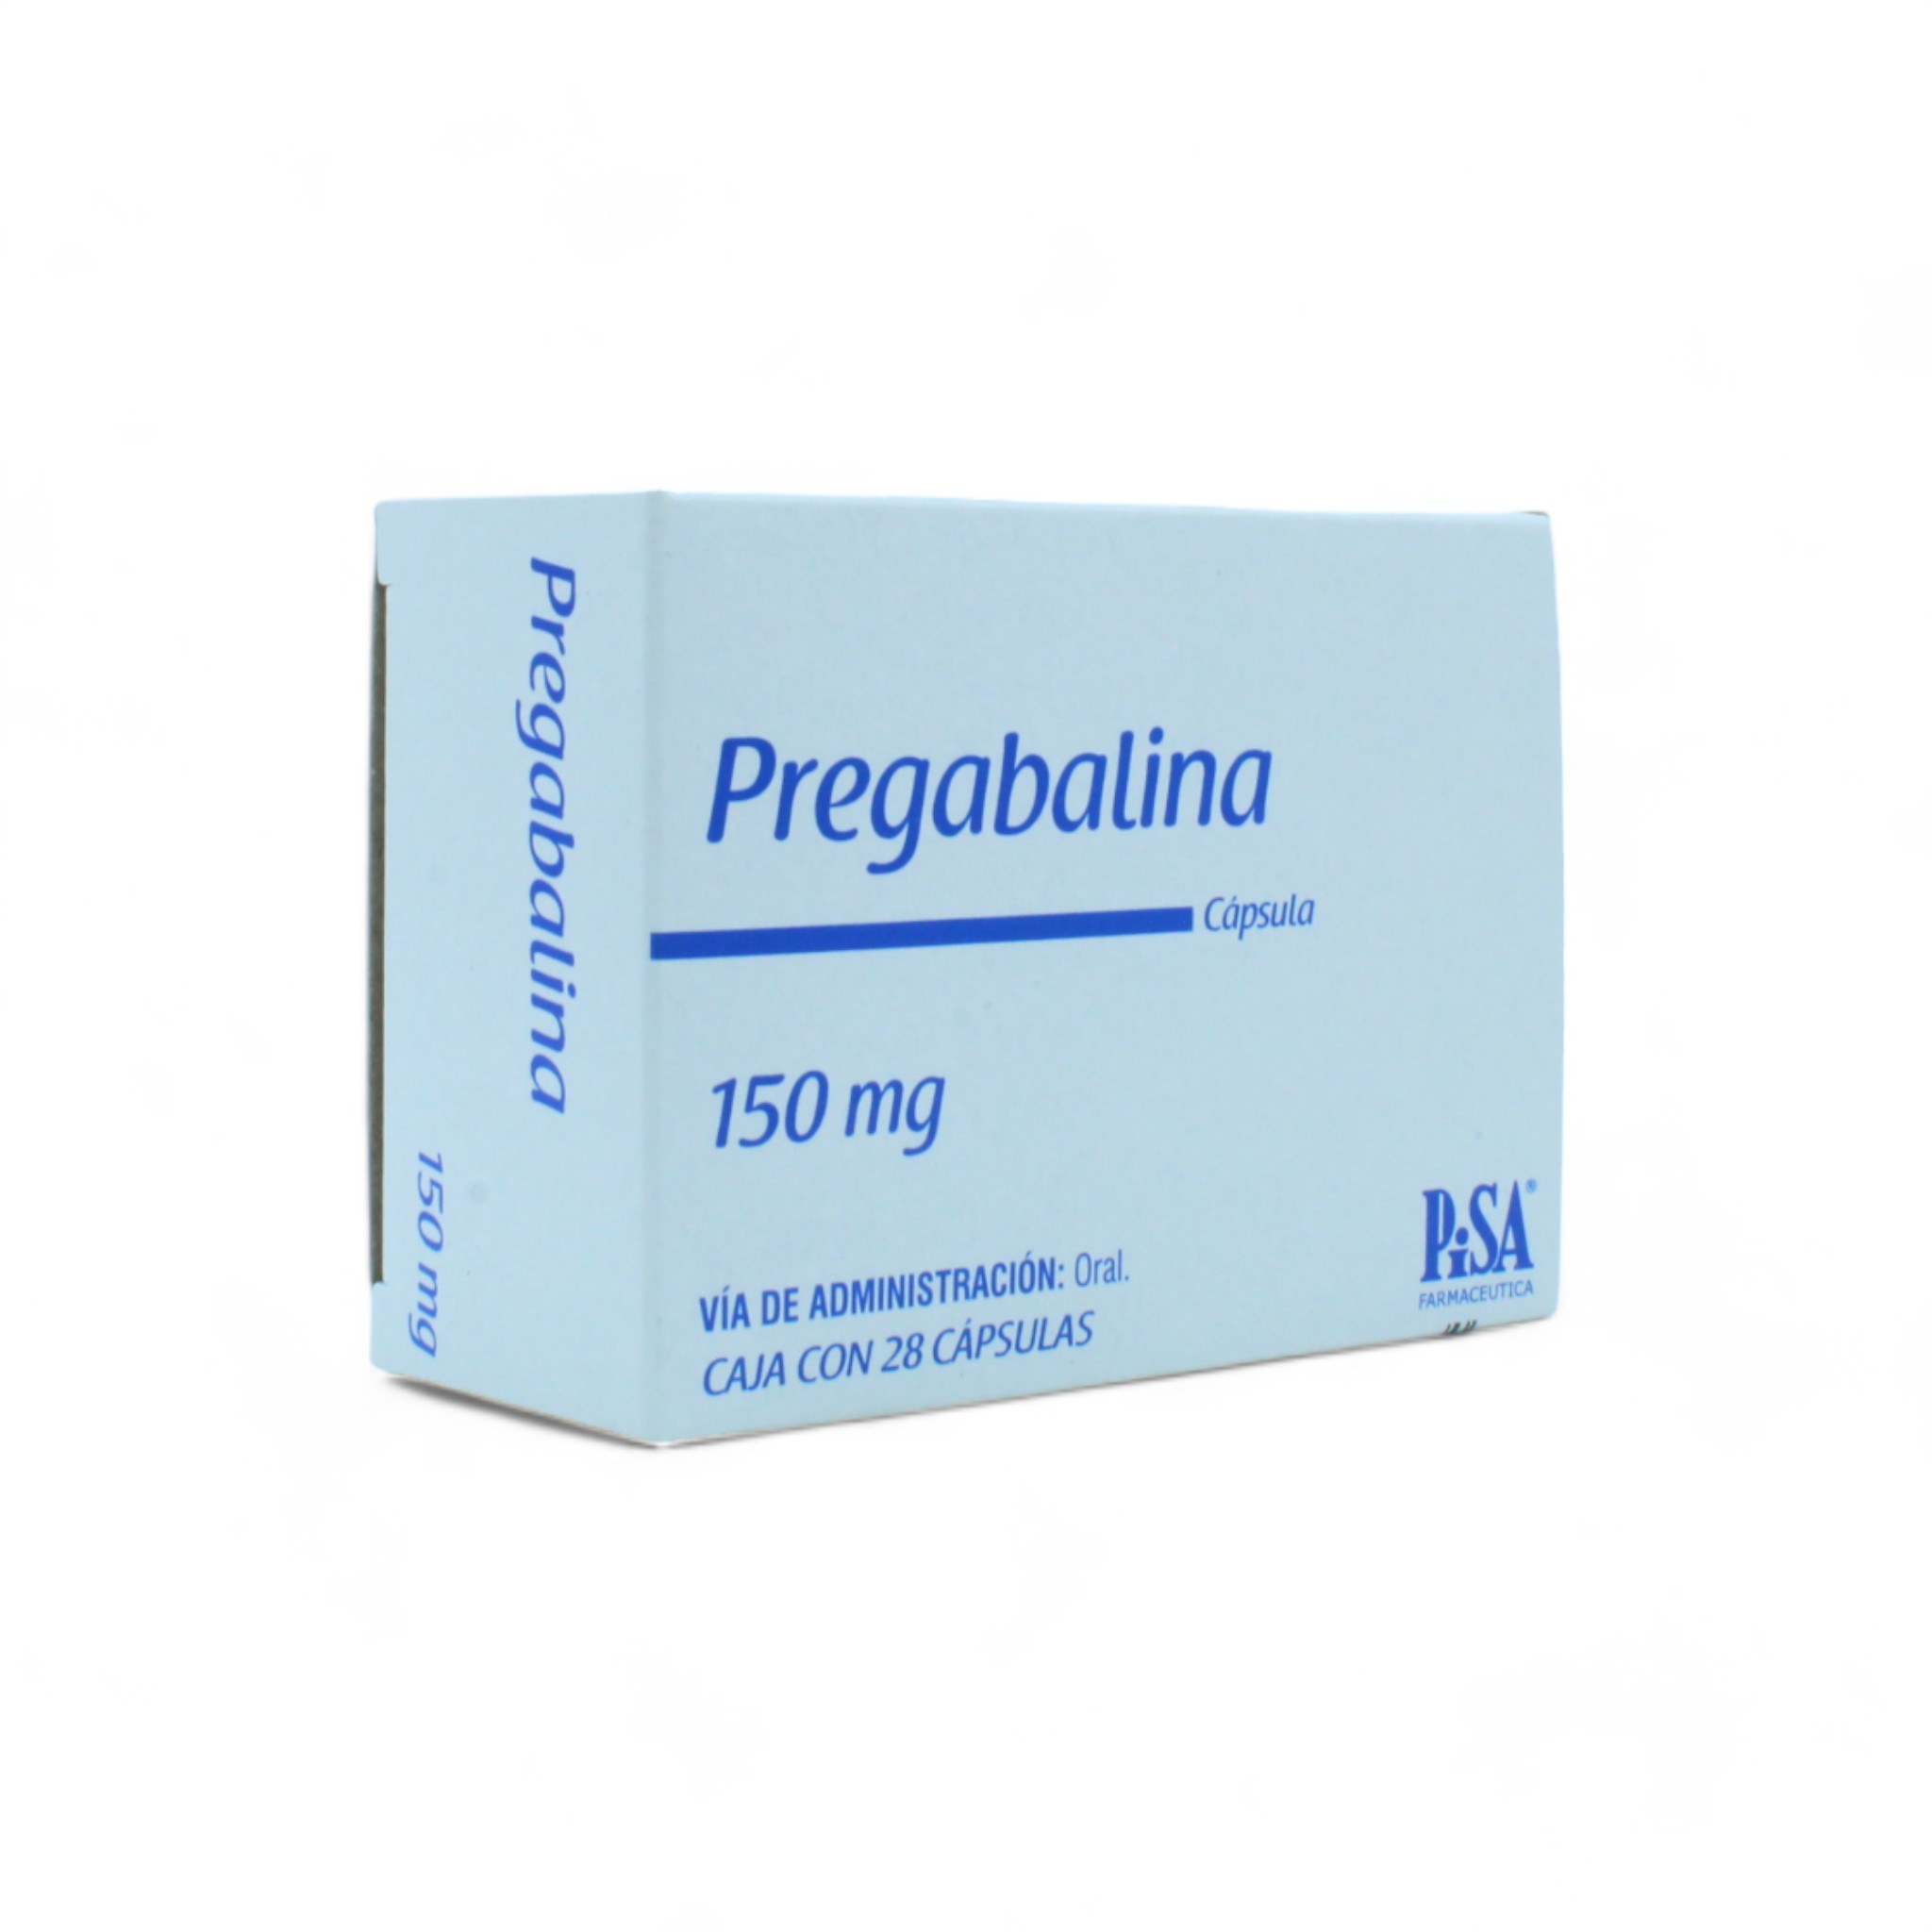 Pregabalina de 150 mg Caja C28